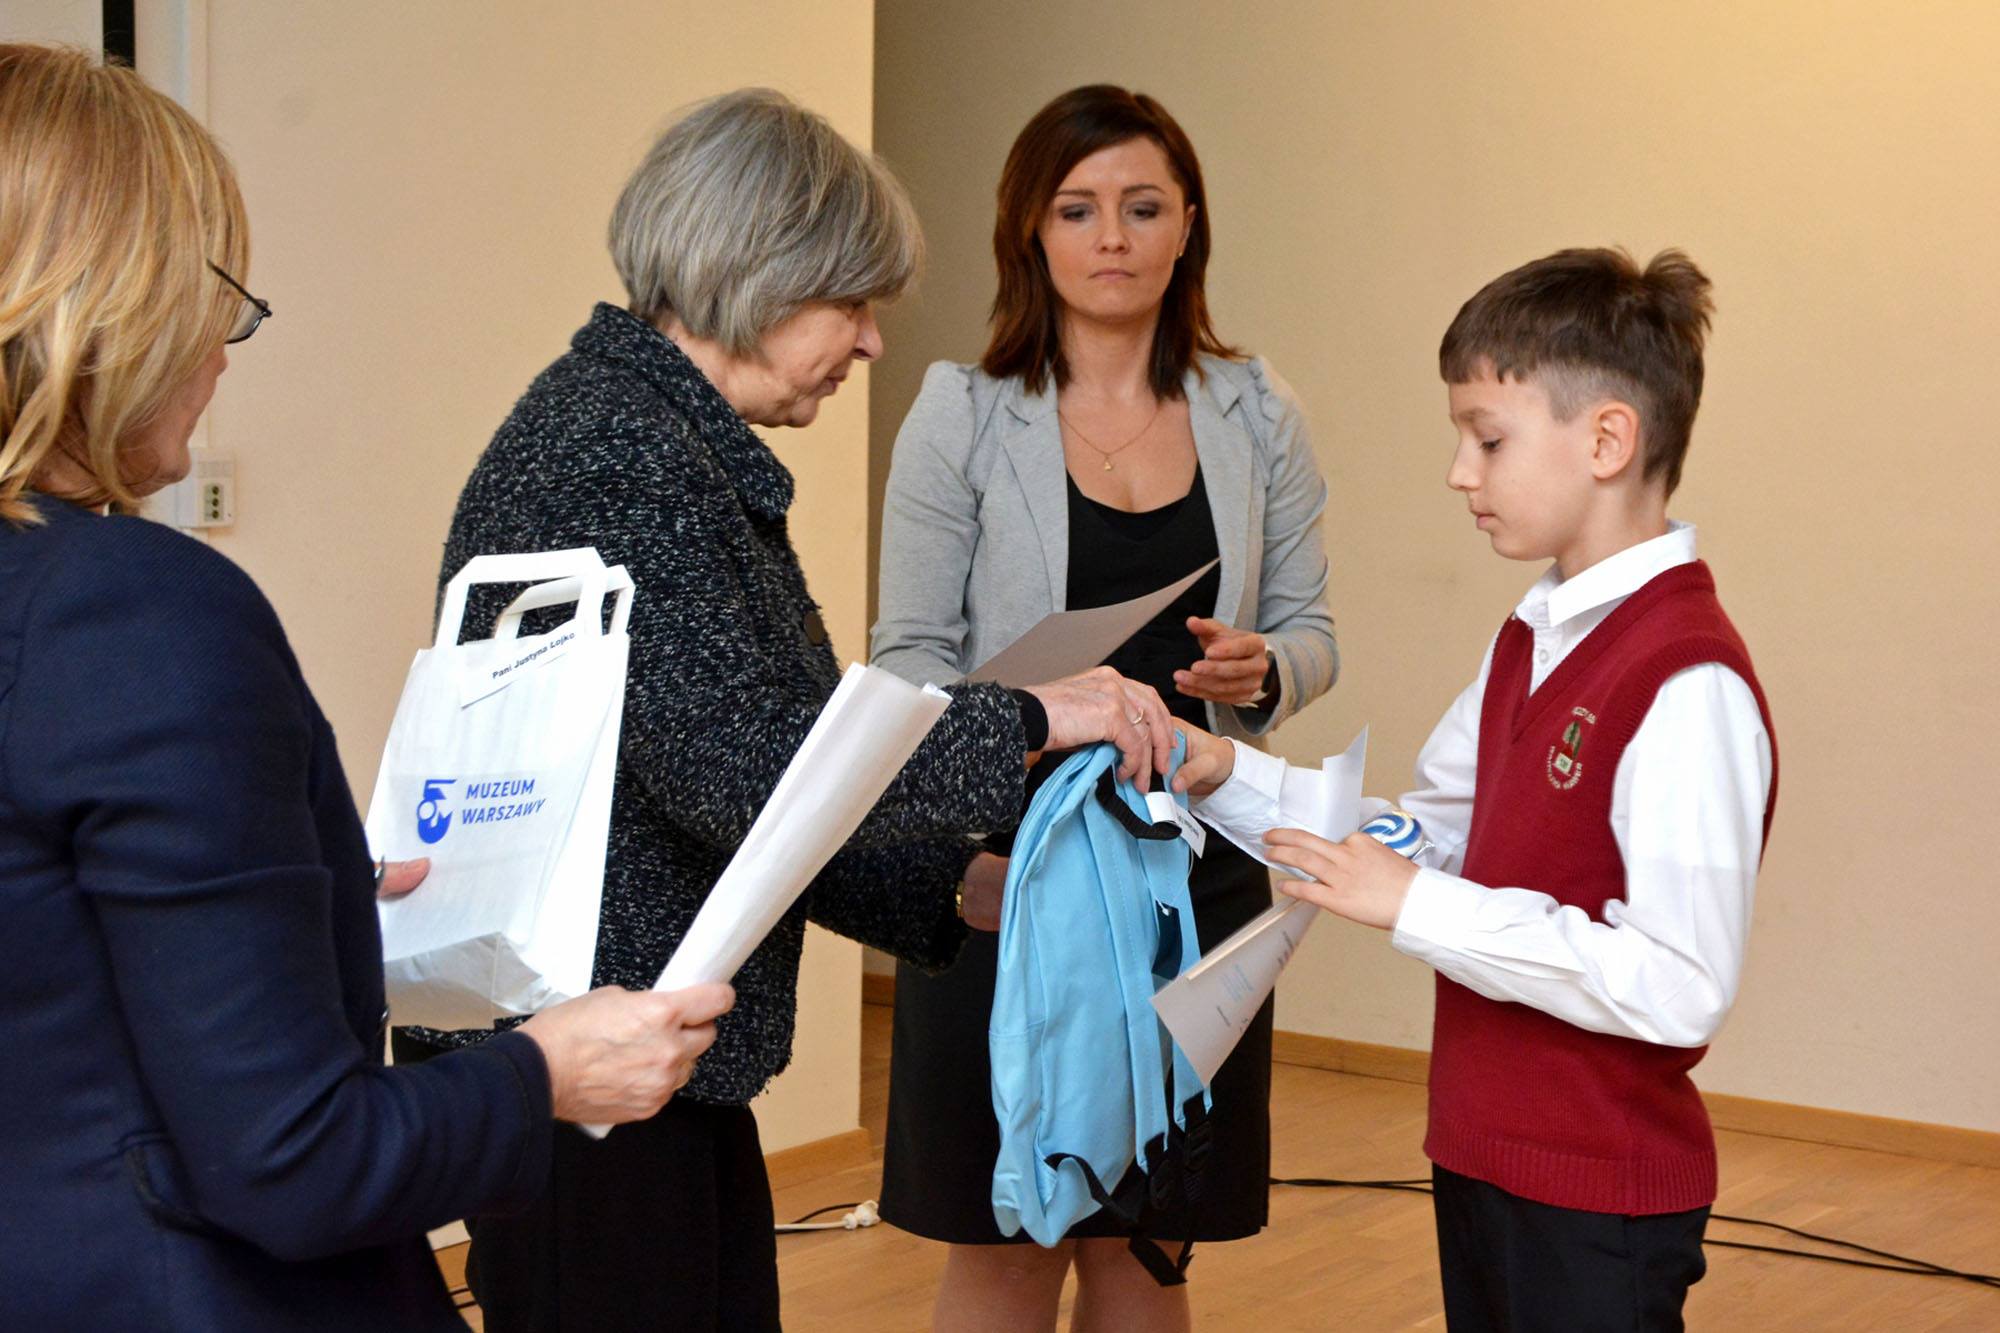 Dyrektor muzeum Ewa Nekanda Trepka wręcza nagrodę, niebieski plecak, laureatowi konkursu